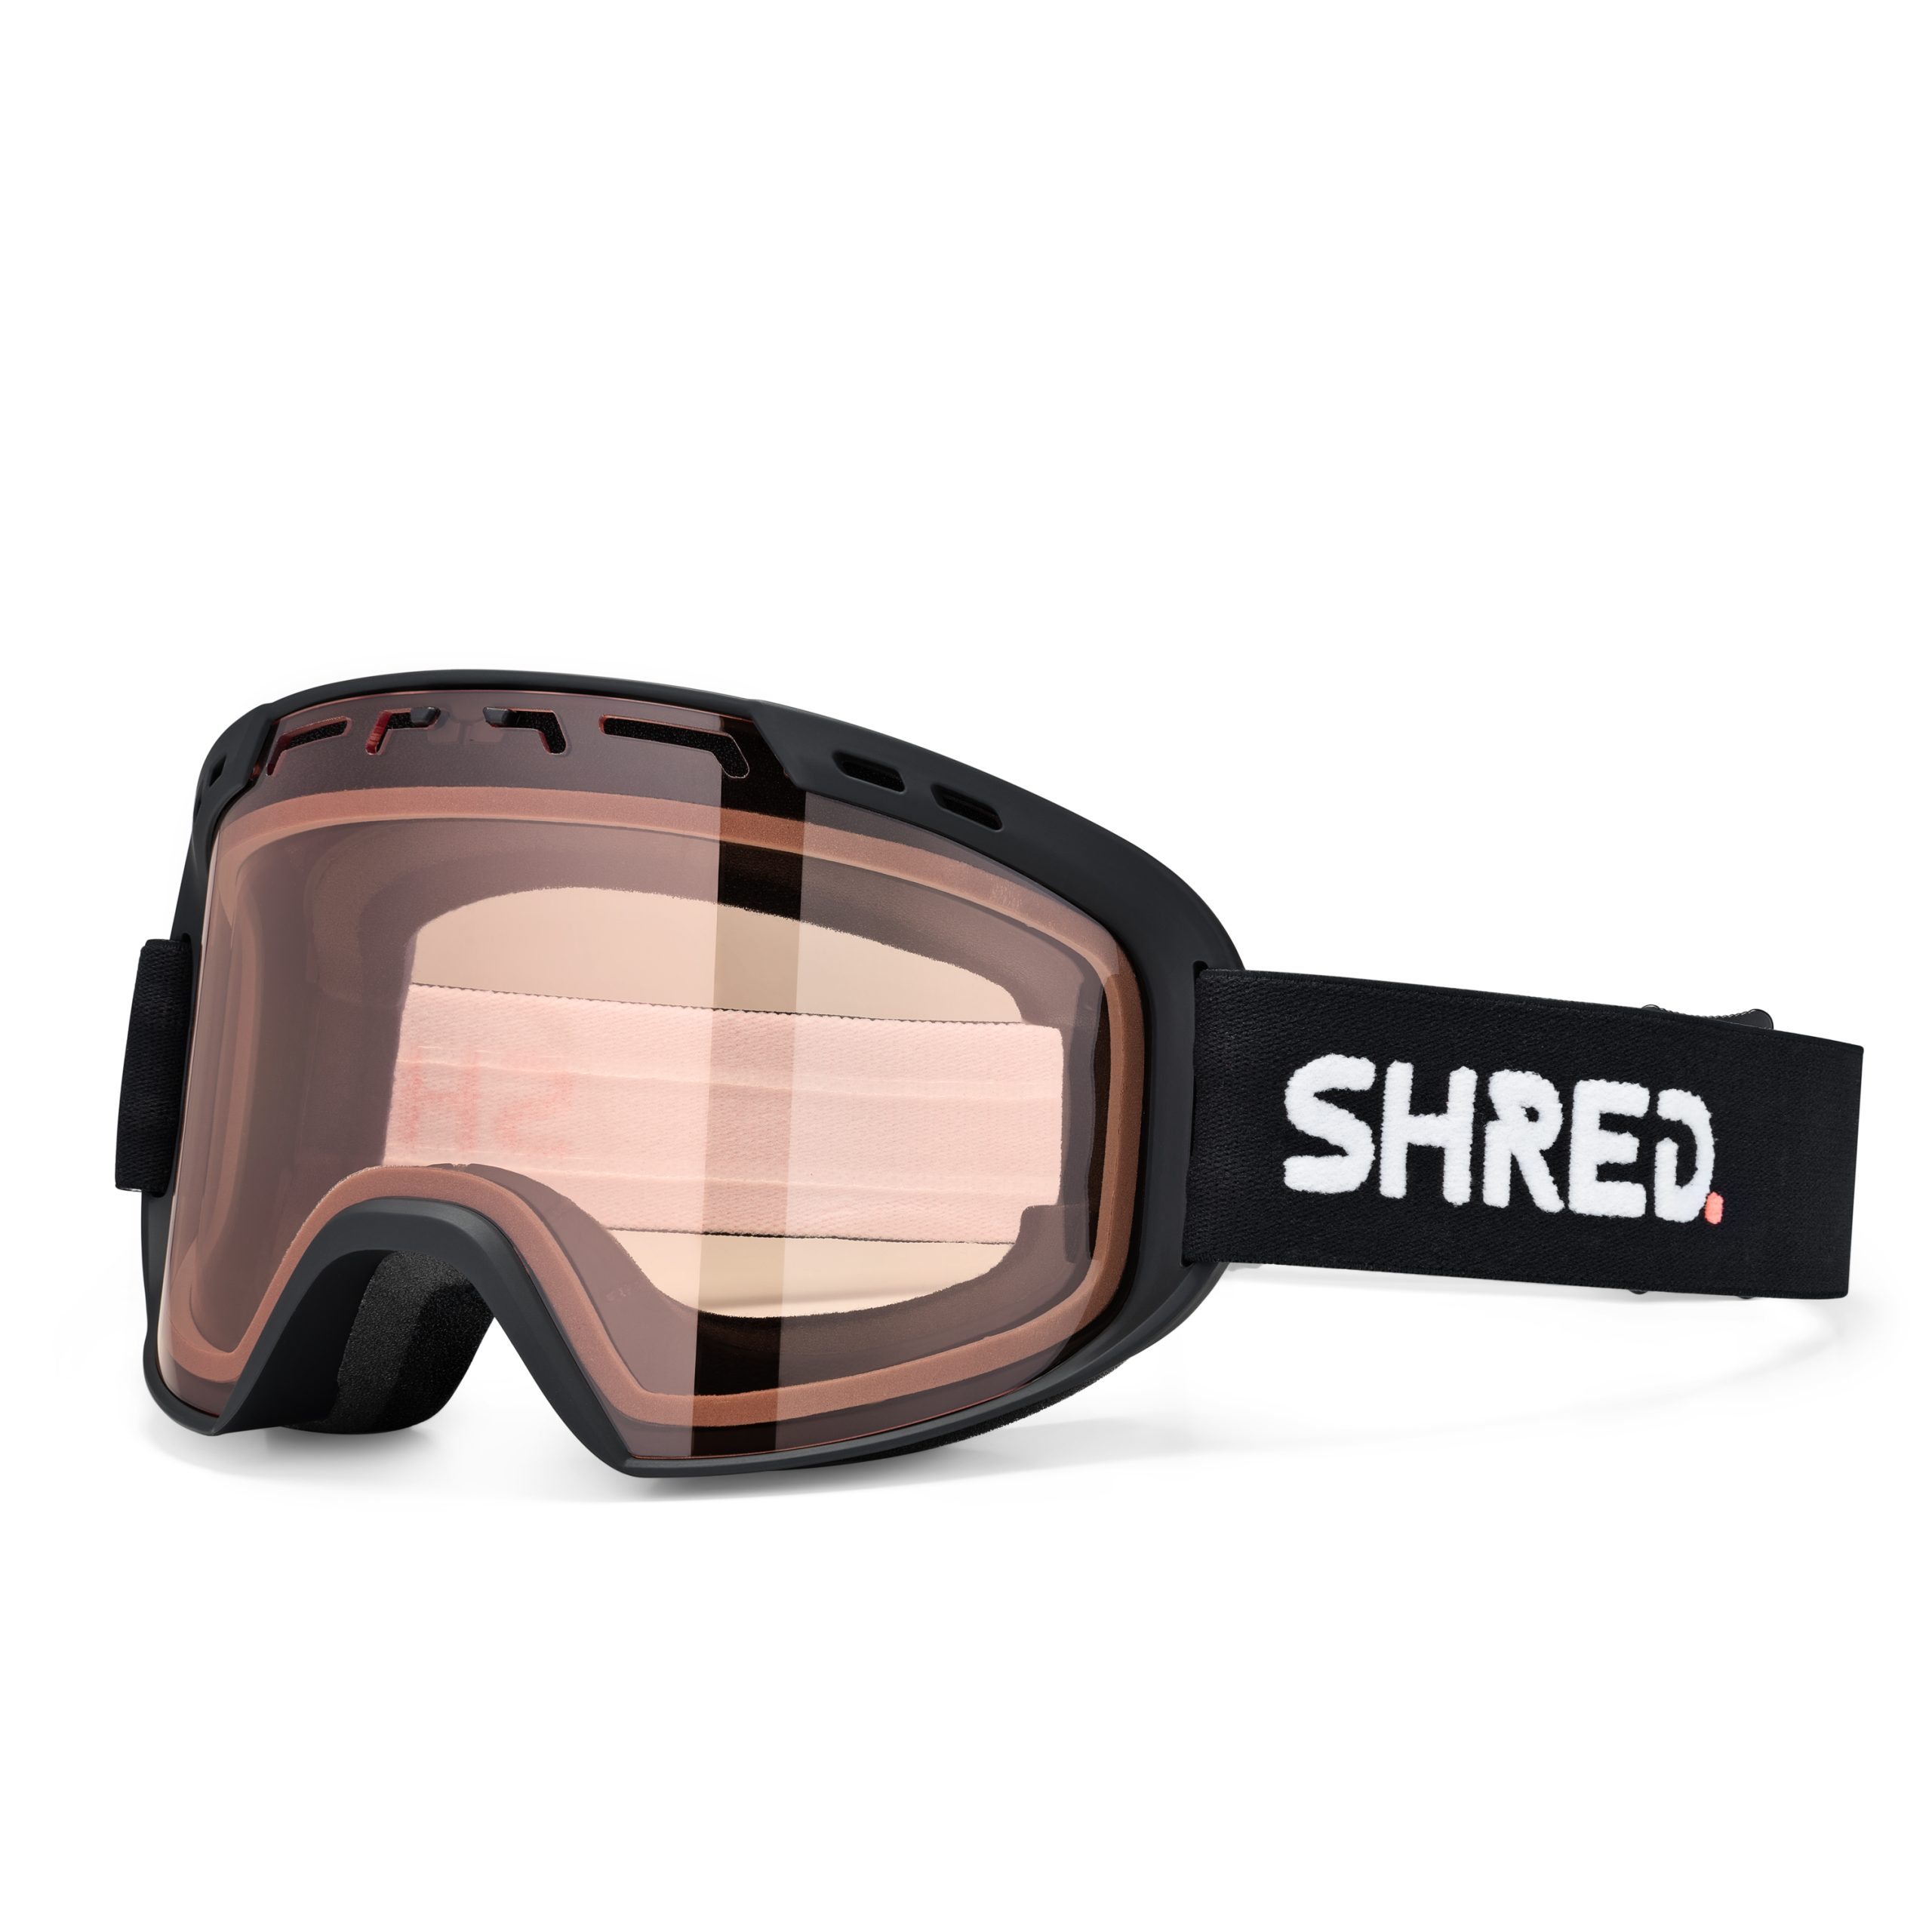 SHRED ゴーグル - スキー・スノーボードアクセサリー